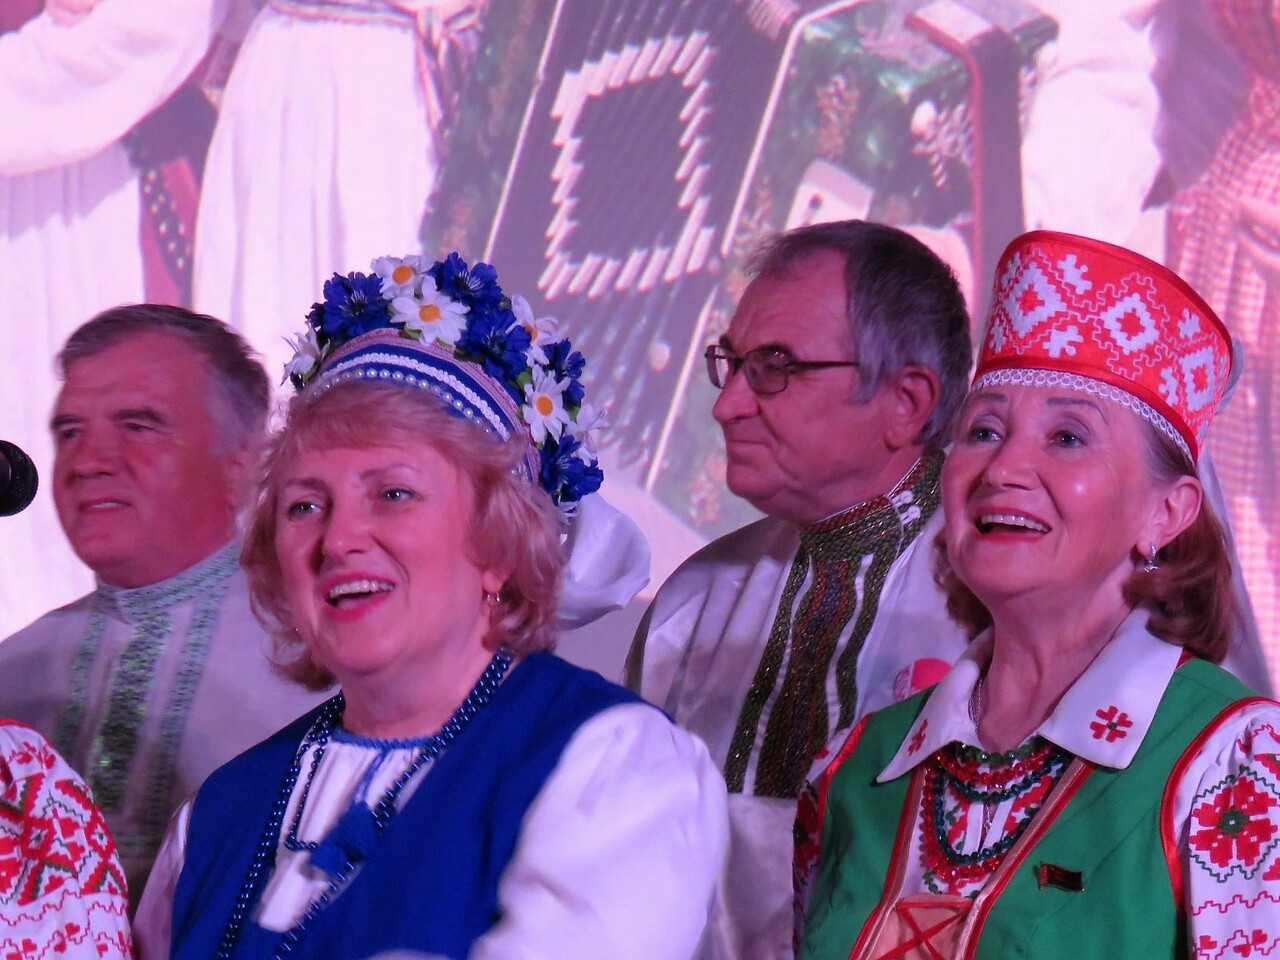 День единения народов России и Беларуси